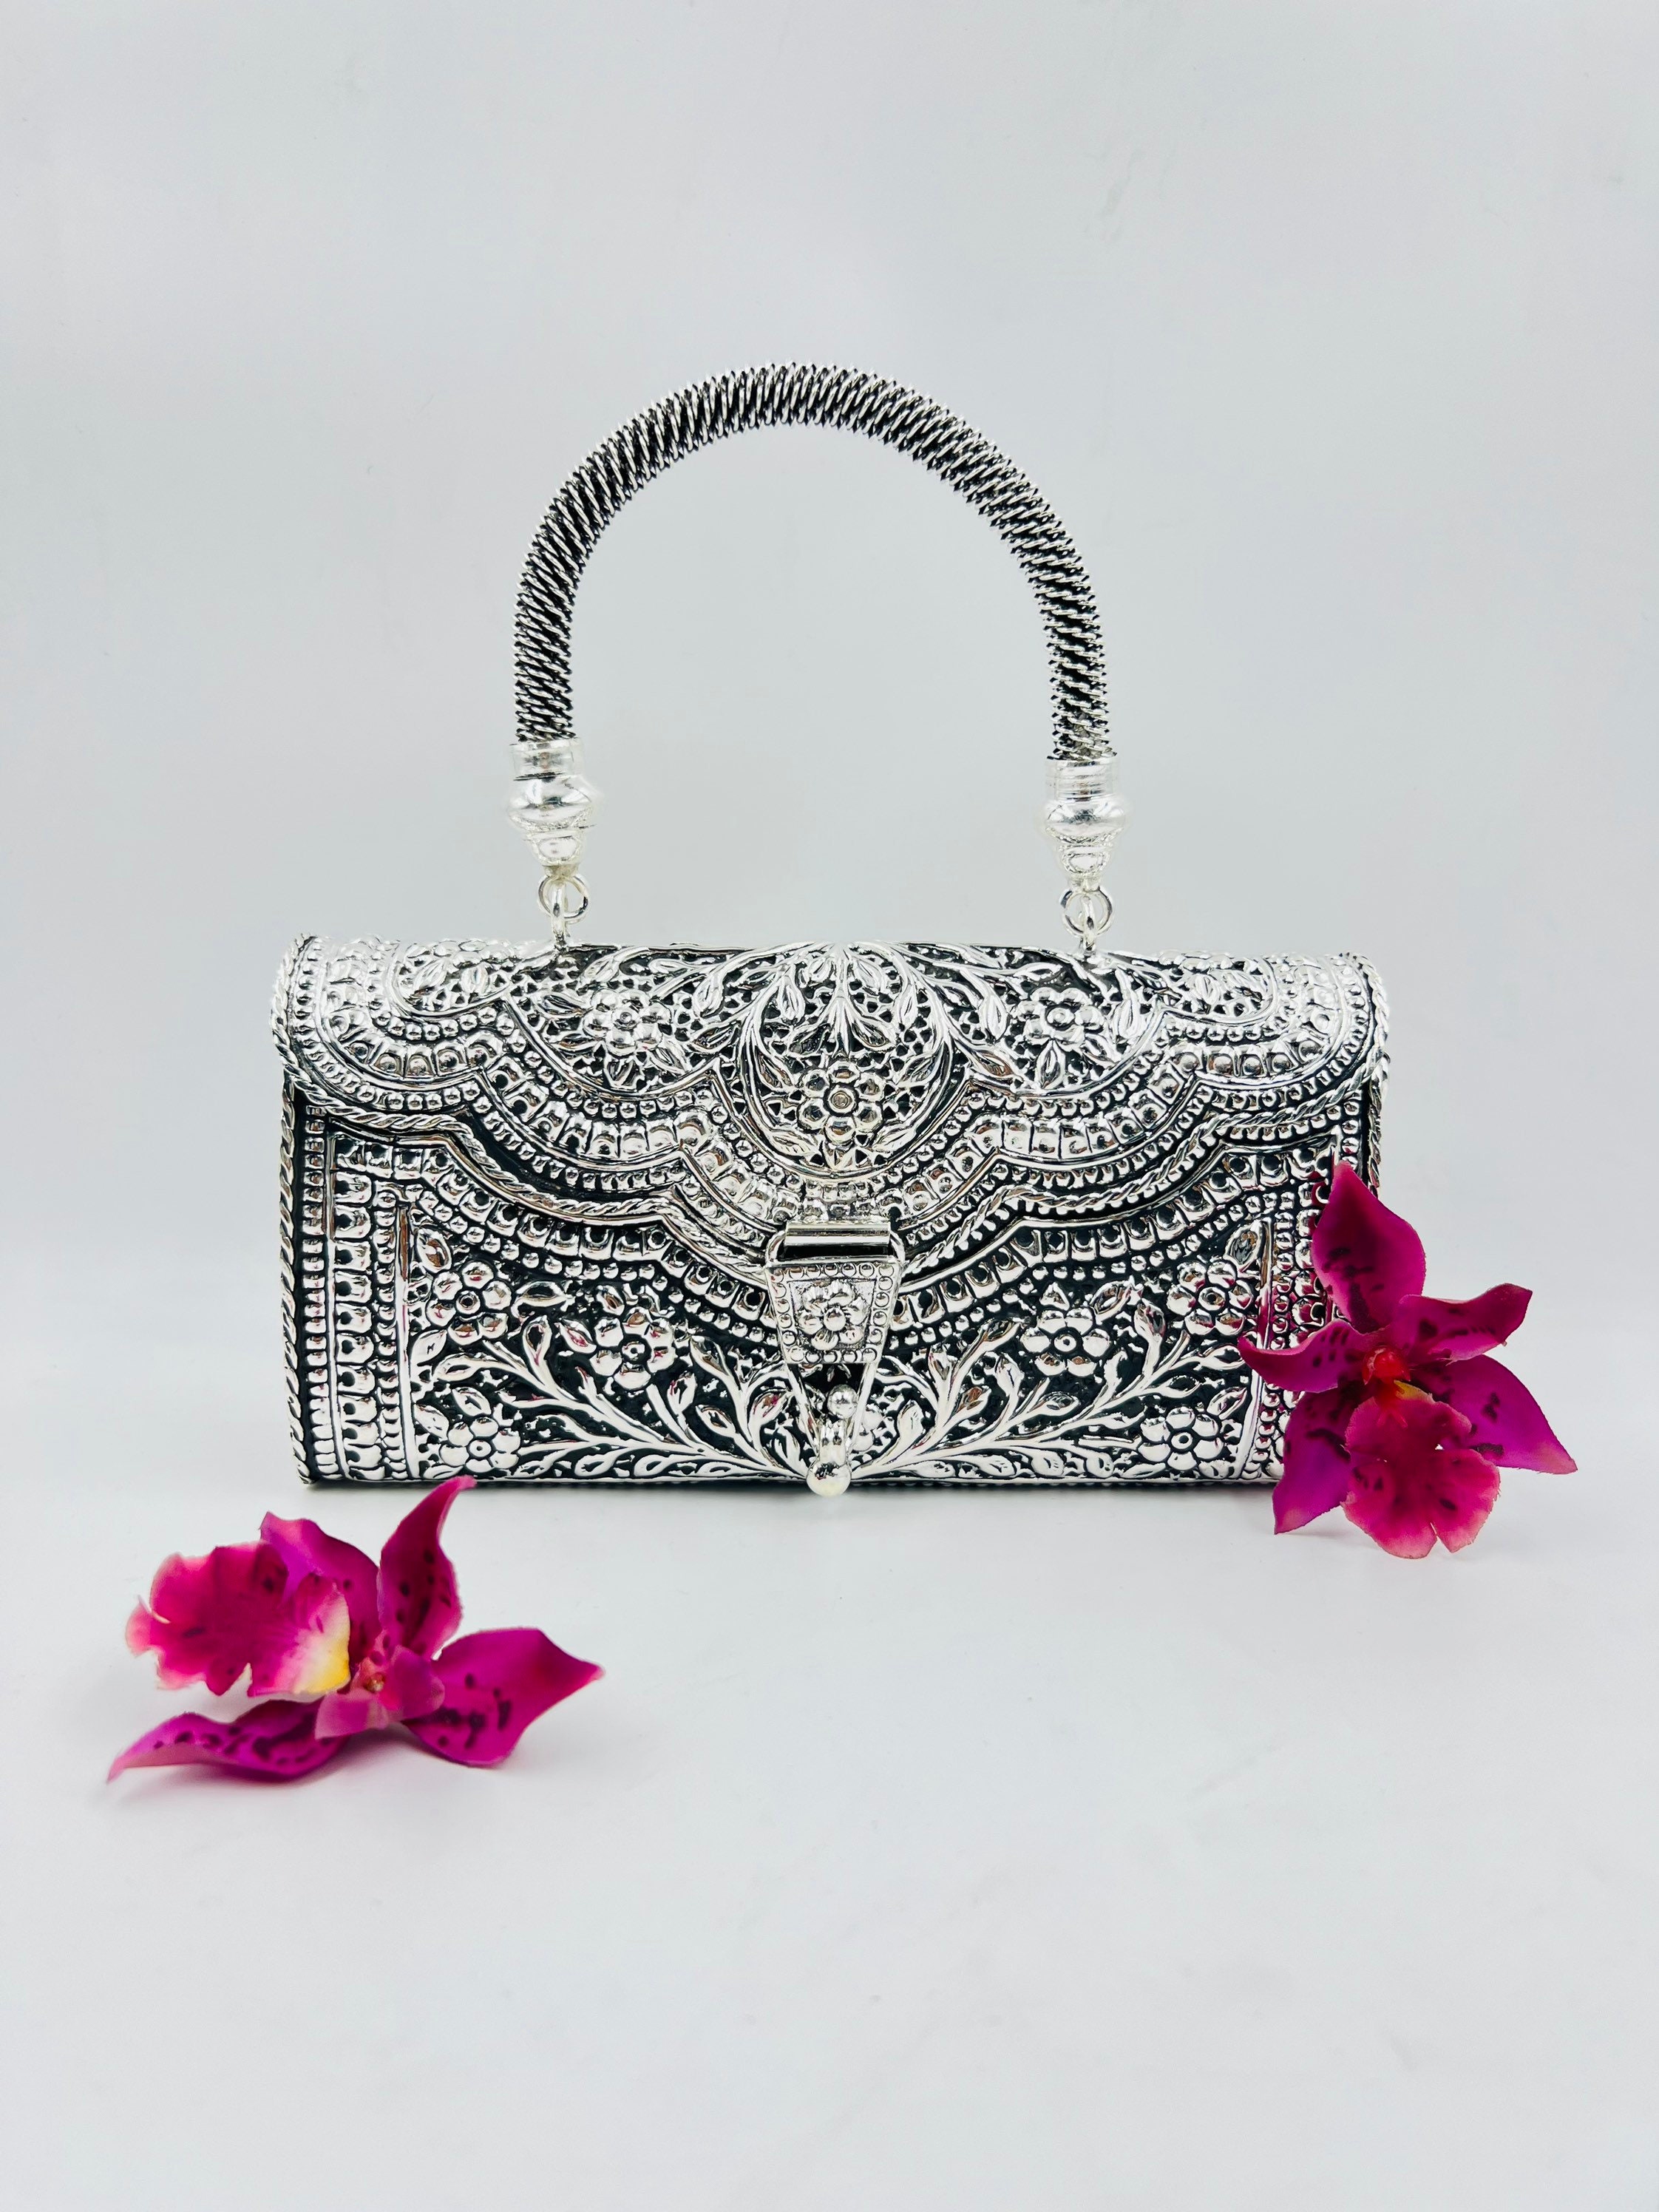 pure silver purse